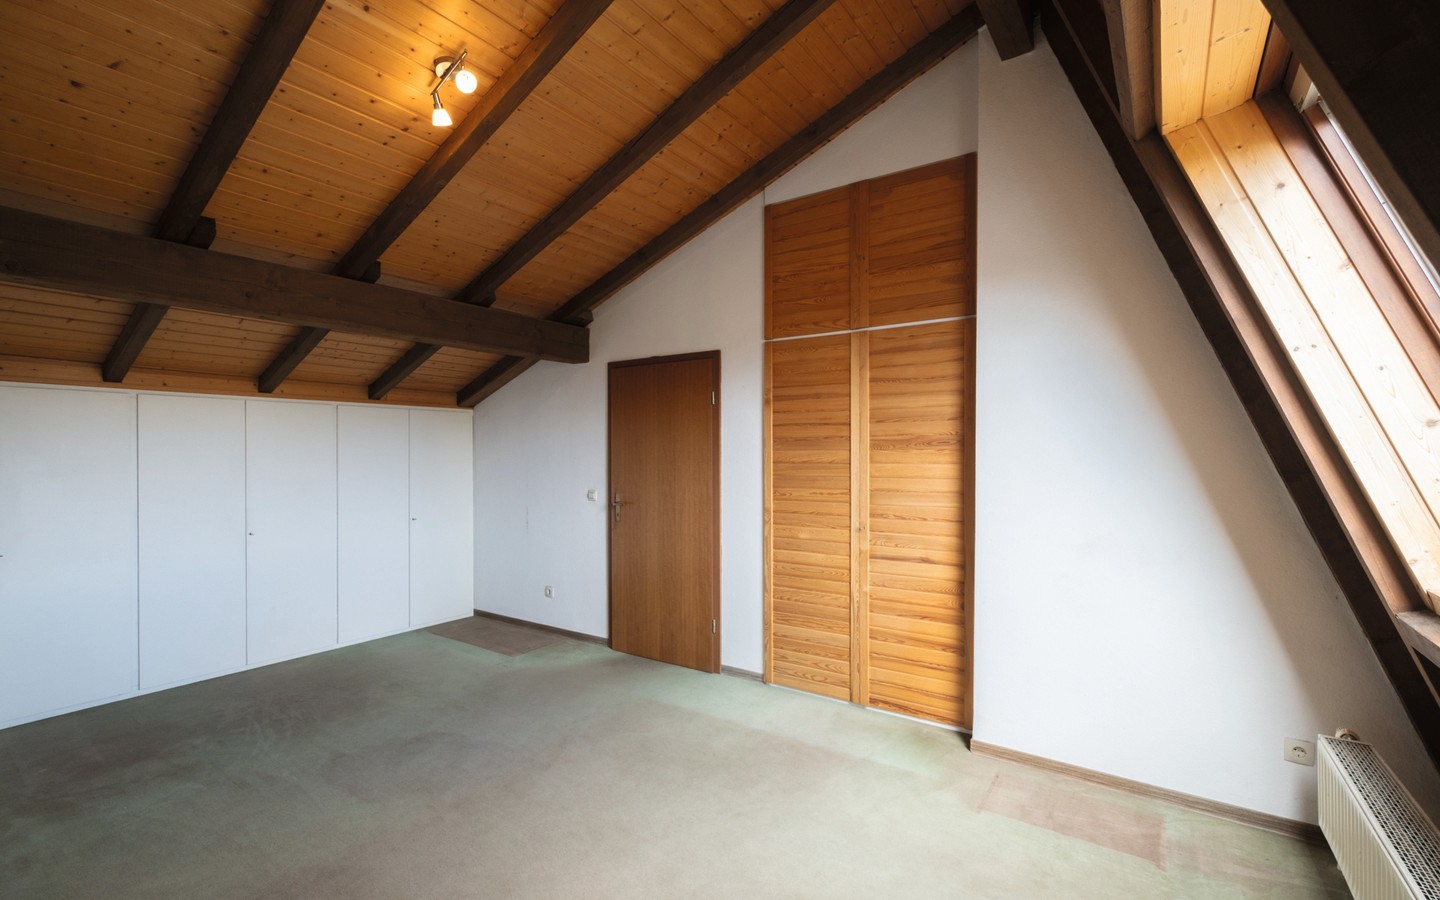 Zimmer 5 - Ihr neues Familiendomizil in Wiesloch: großzügiges RMH mit findiger Architektur und viel Platz